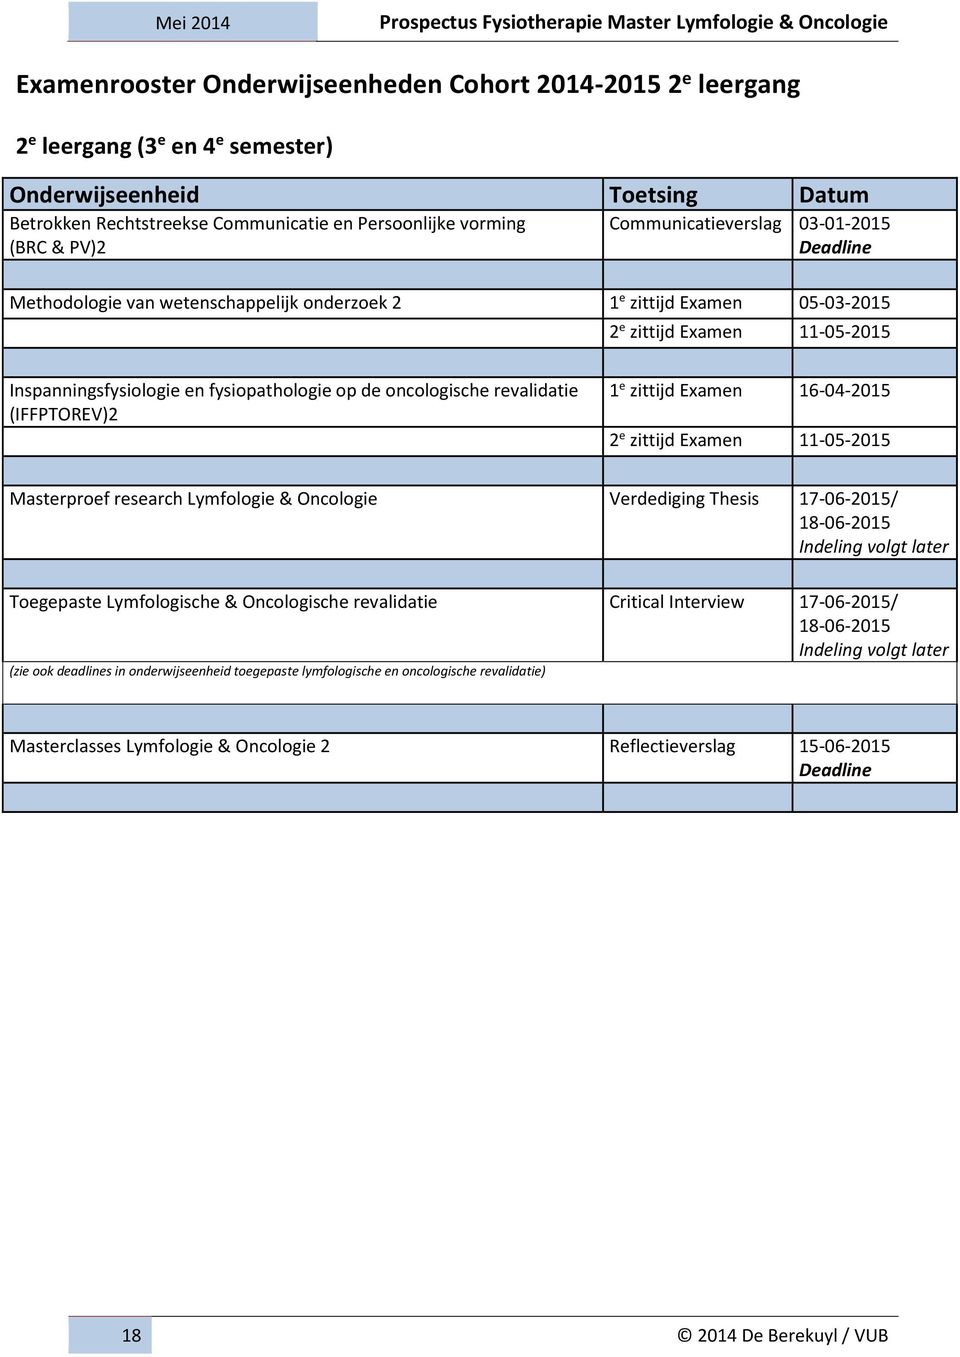 oncologische revalidatie (IFFPTOREV)2 1 e zittijd Examen 16-04-2015 2 e zittijd Examen 11-05-2015 Masterproef research Lymfologie & Oncologie Verdediging Thesis 17-06-2015/ 18-06-2015 Indeling volgt